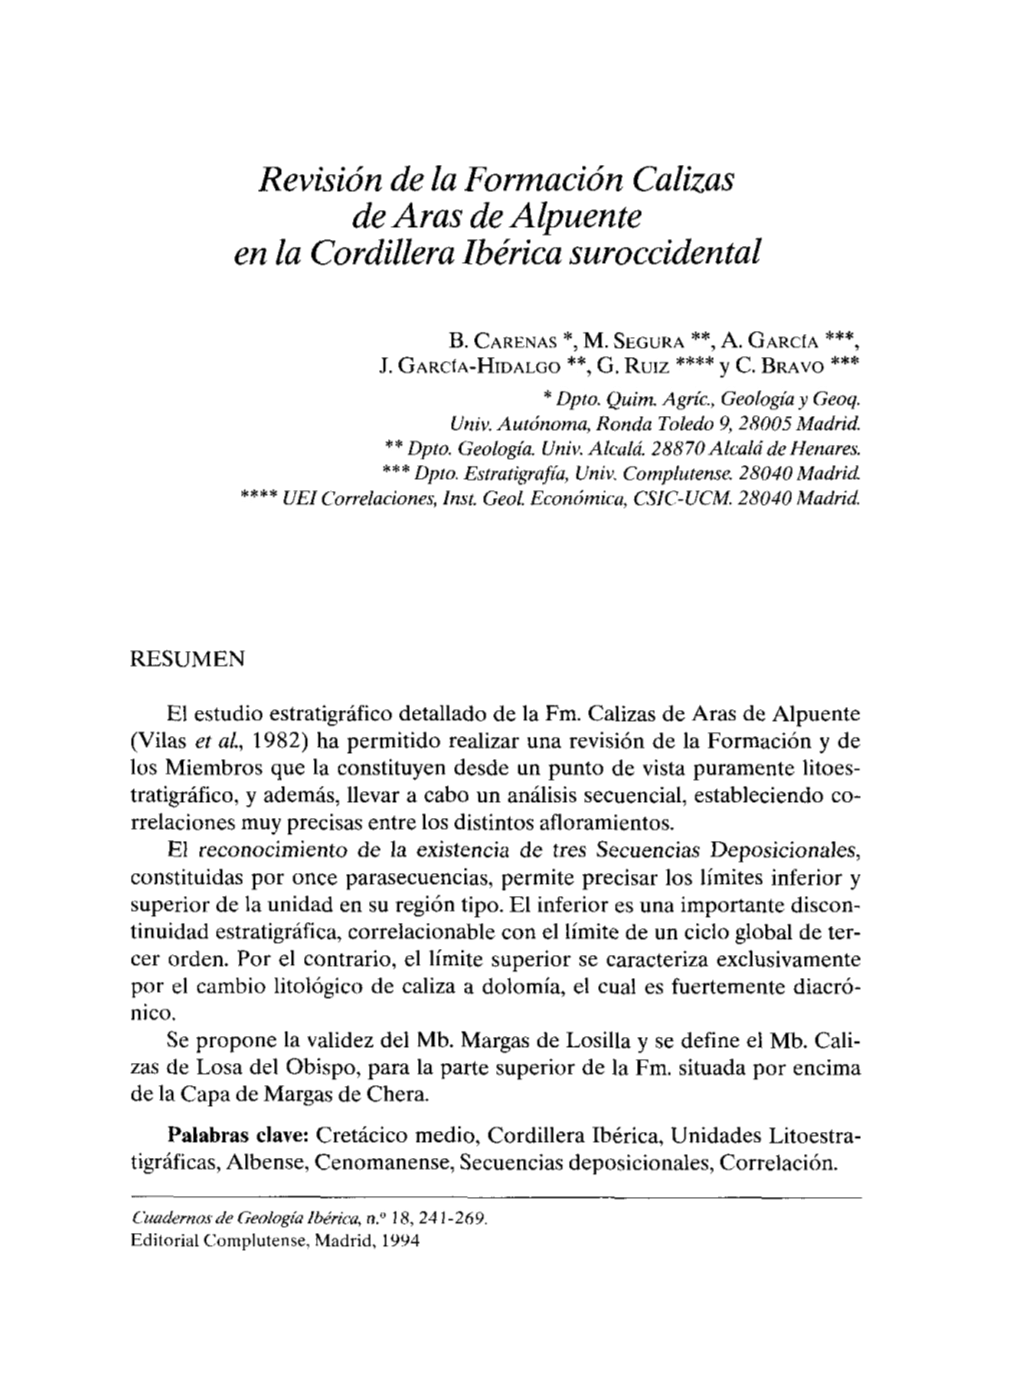 Revisión De La Formación Calizas De Aras Dealpuente En La Cordillera Ibérica Suroccidental